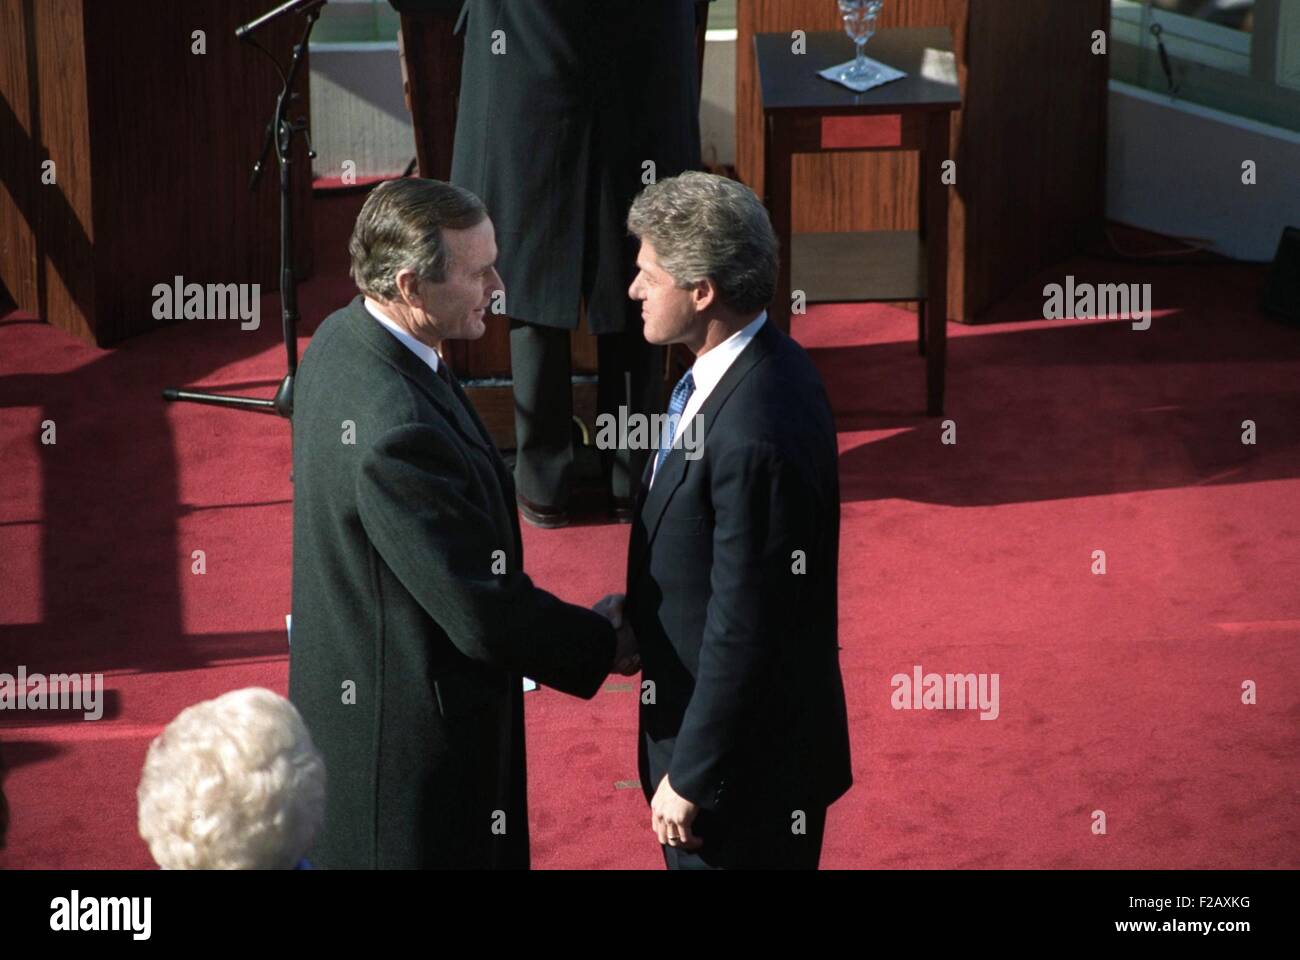 Scheidende Präsident George H.W. Bush und eingehende Präsident Bill Clinton. 20. Januar 1993. Hände schütteln sie kurz nach der konstituierenden Zeremonien auf dem US-Kapitol. (BSLOC 2015 2 185) Stockfoto